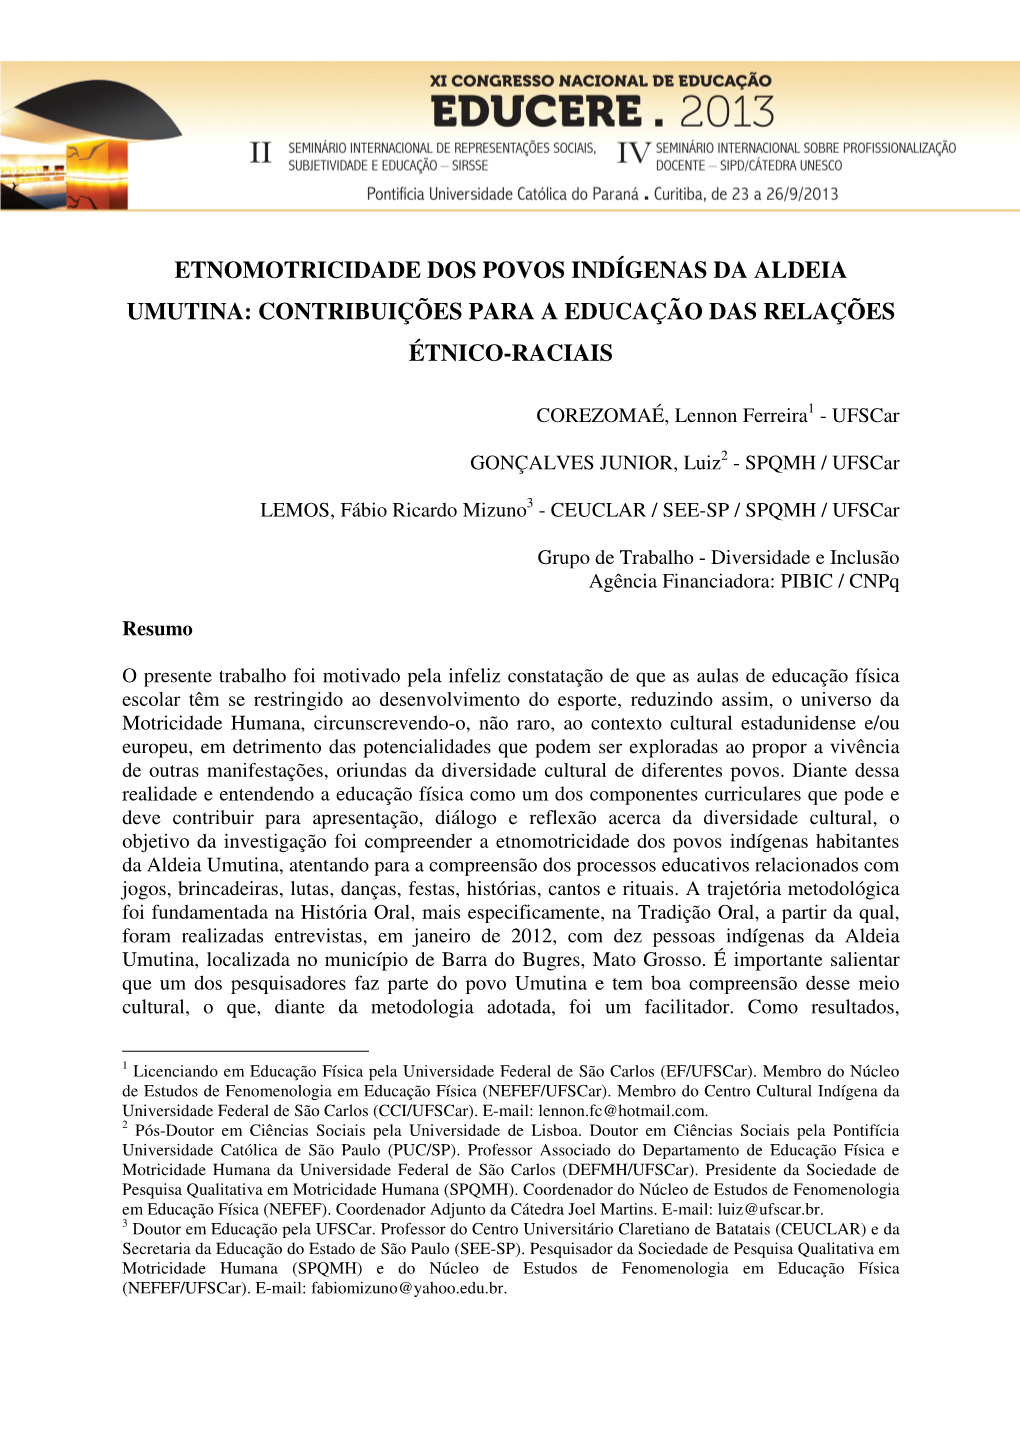 Etnomotricidade Dos Povos Indígenas Da Aldeia Umutina: Contribuições Para a Educação Das Relações Étnico-Raciais